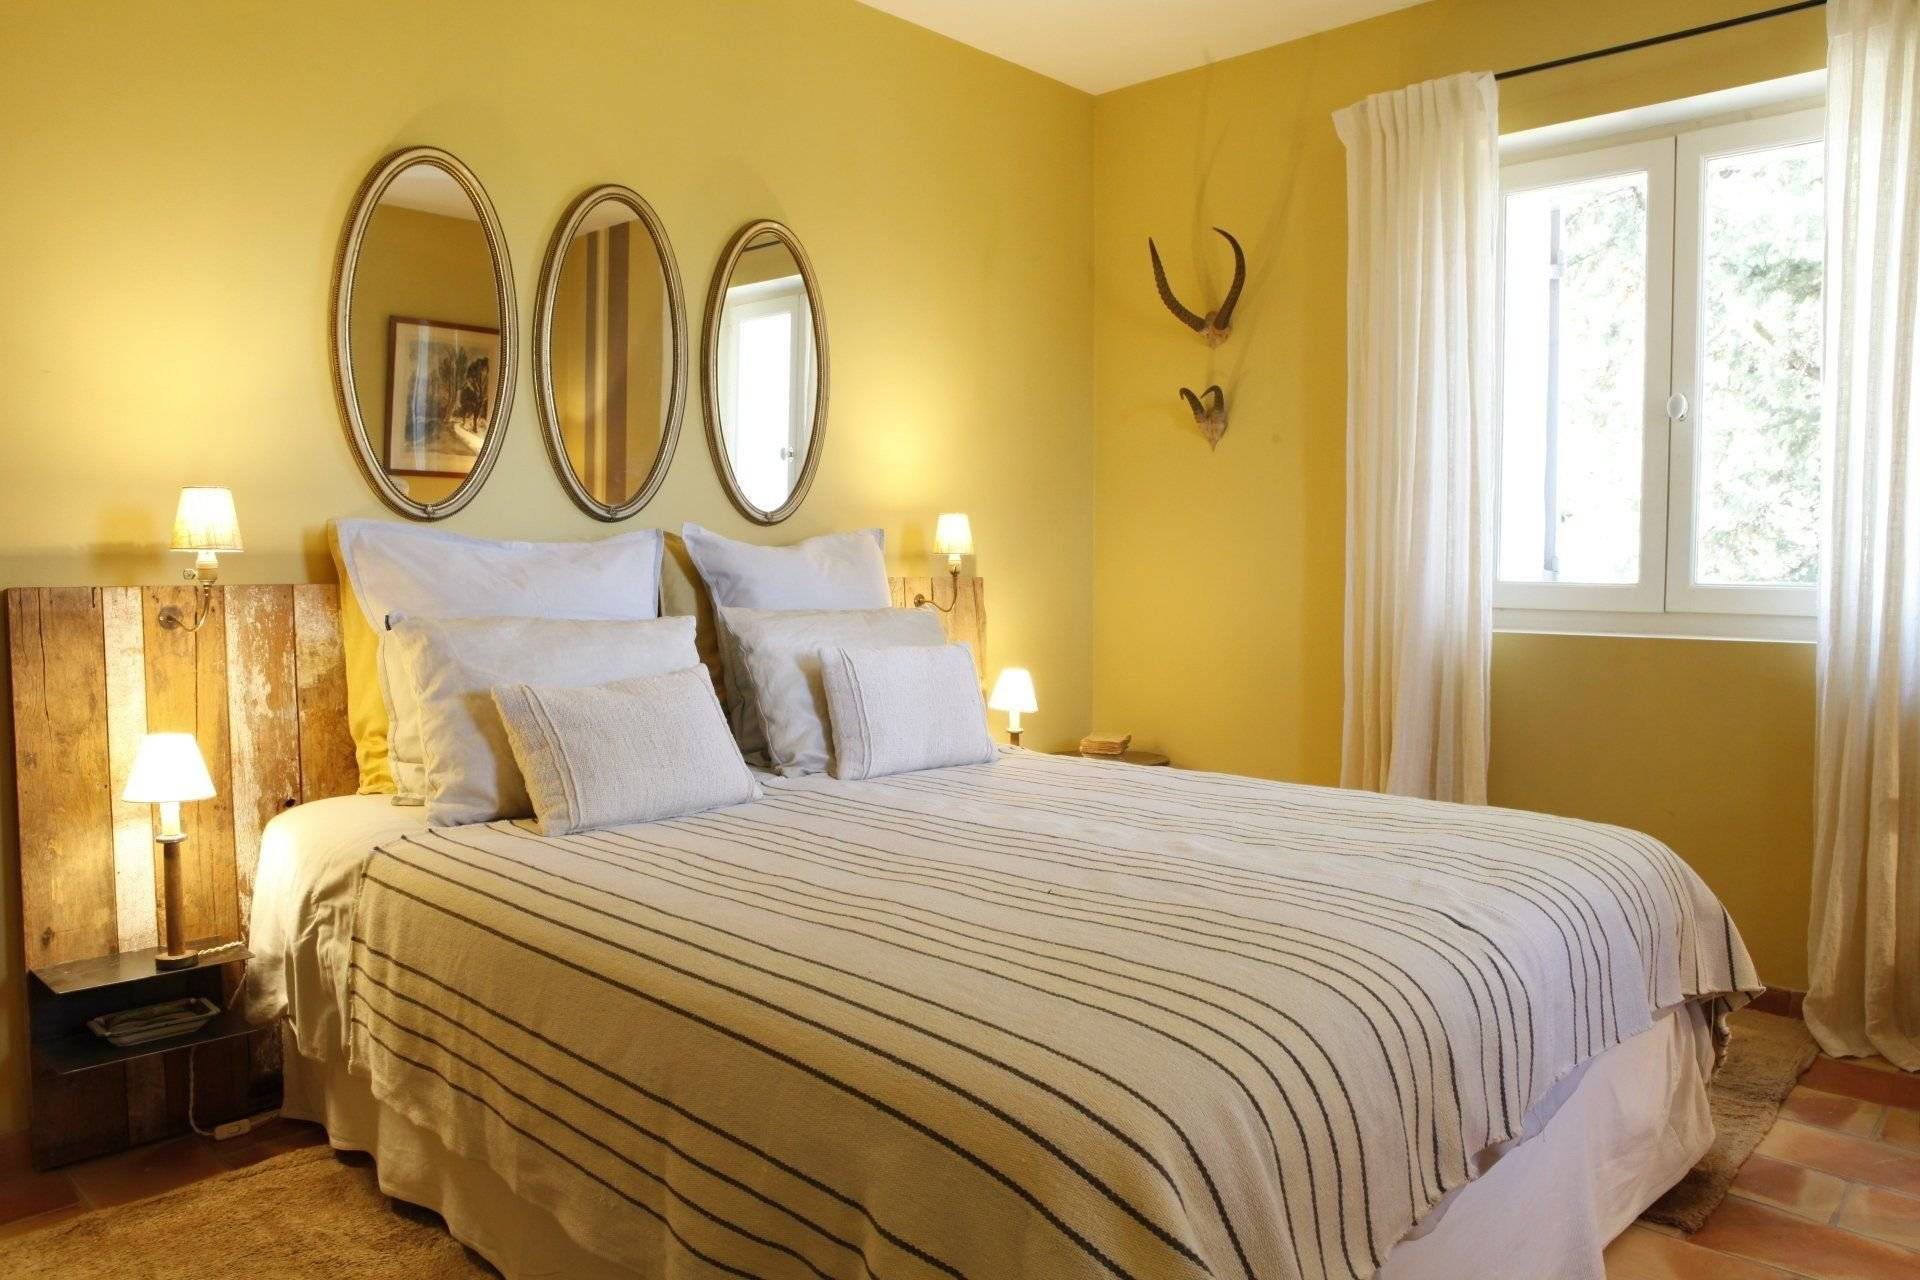 Желтая спальня - 100 фото дизайна спальни в желтых тонах